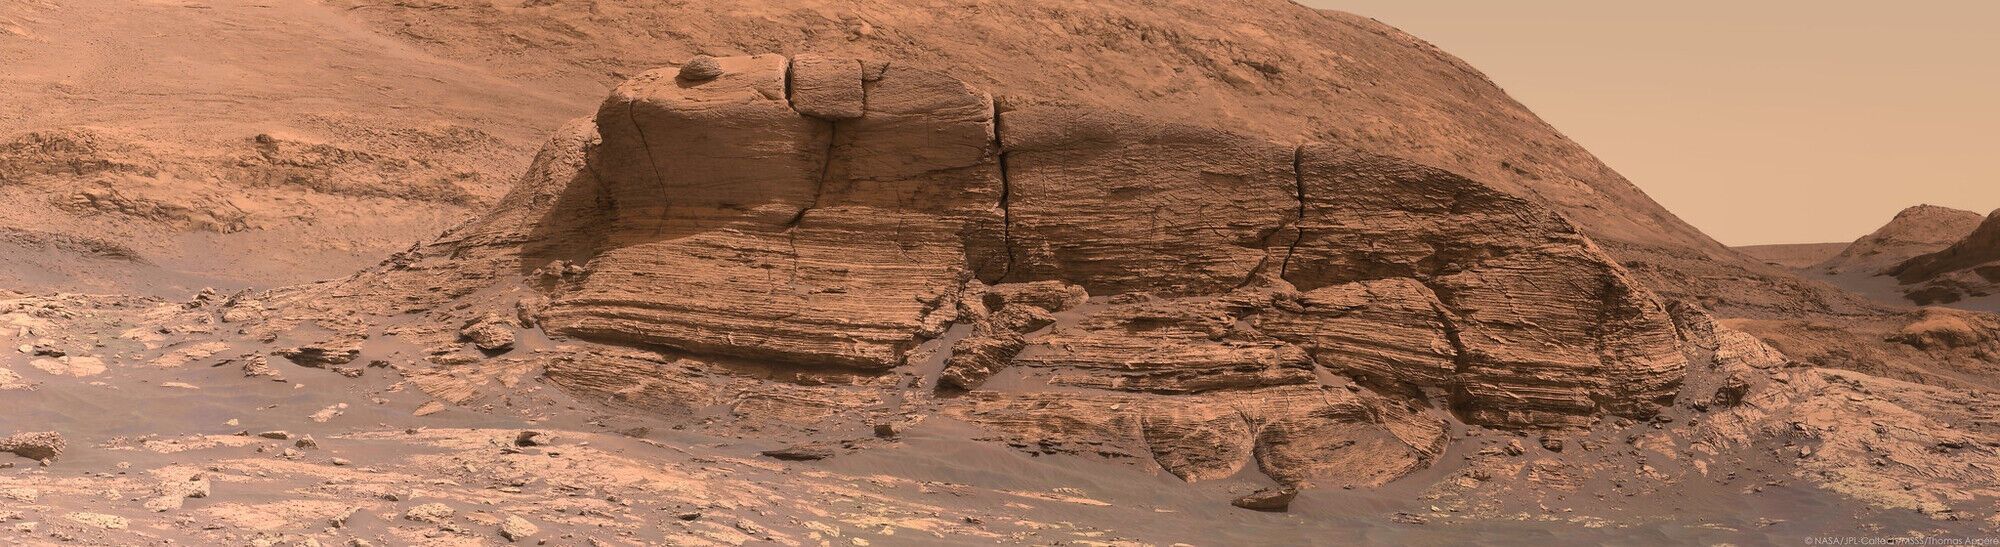 Холм "Мон-Мерку" на Марсе